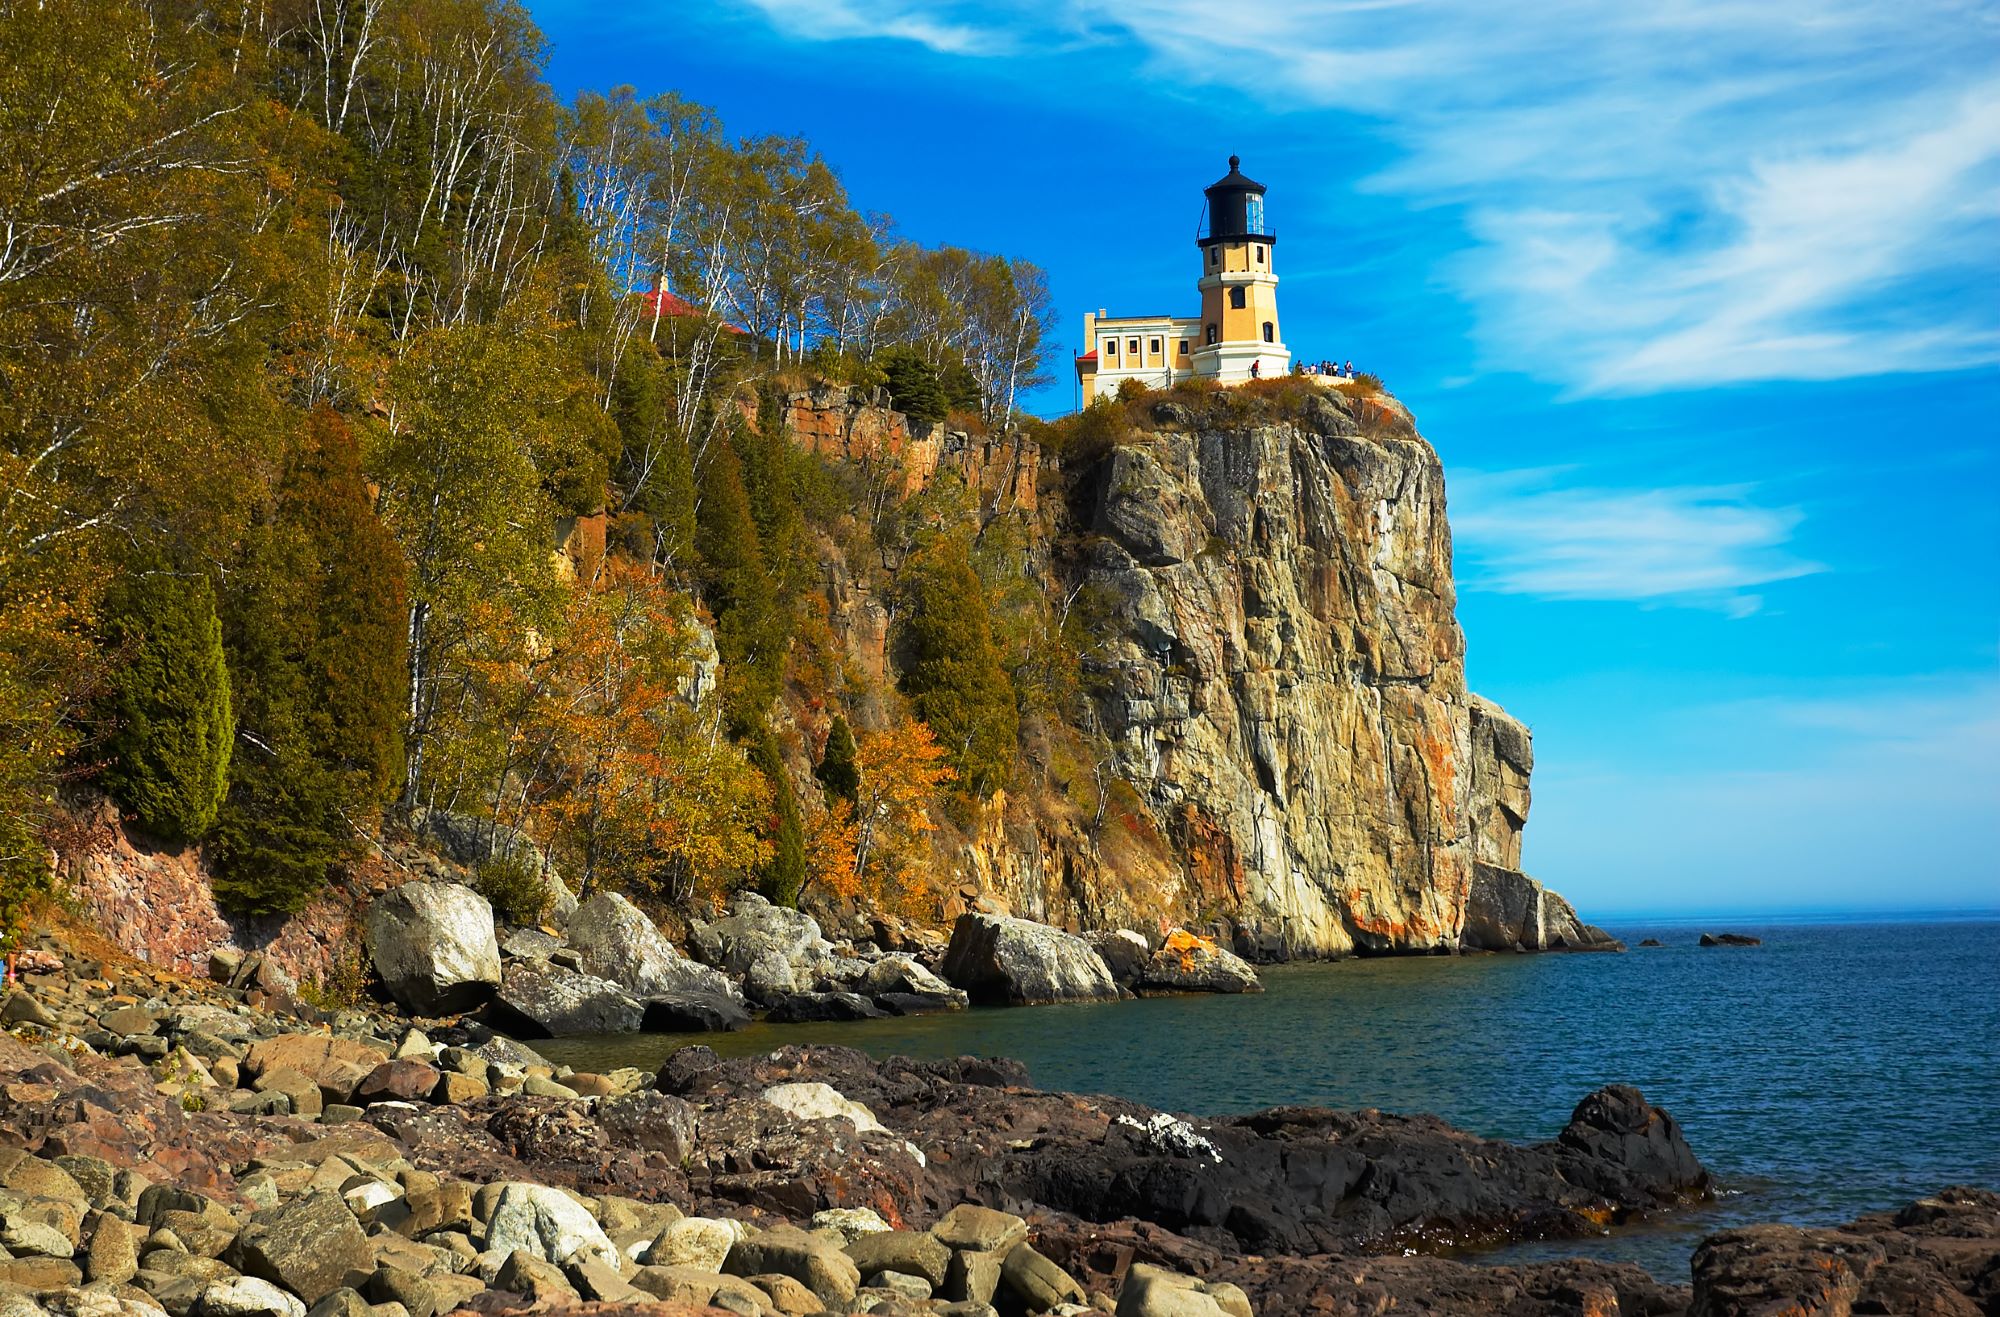 Tour Split Rock Lighthouse A National Historic Landmark in Two Harbors